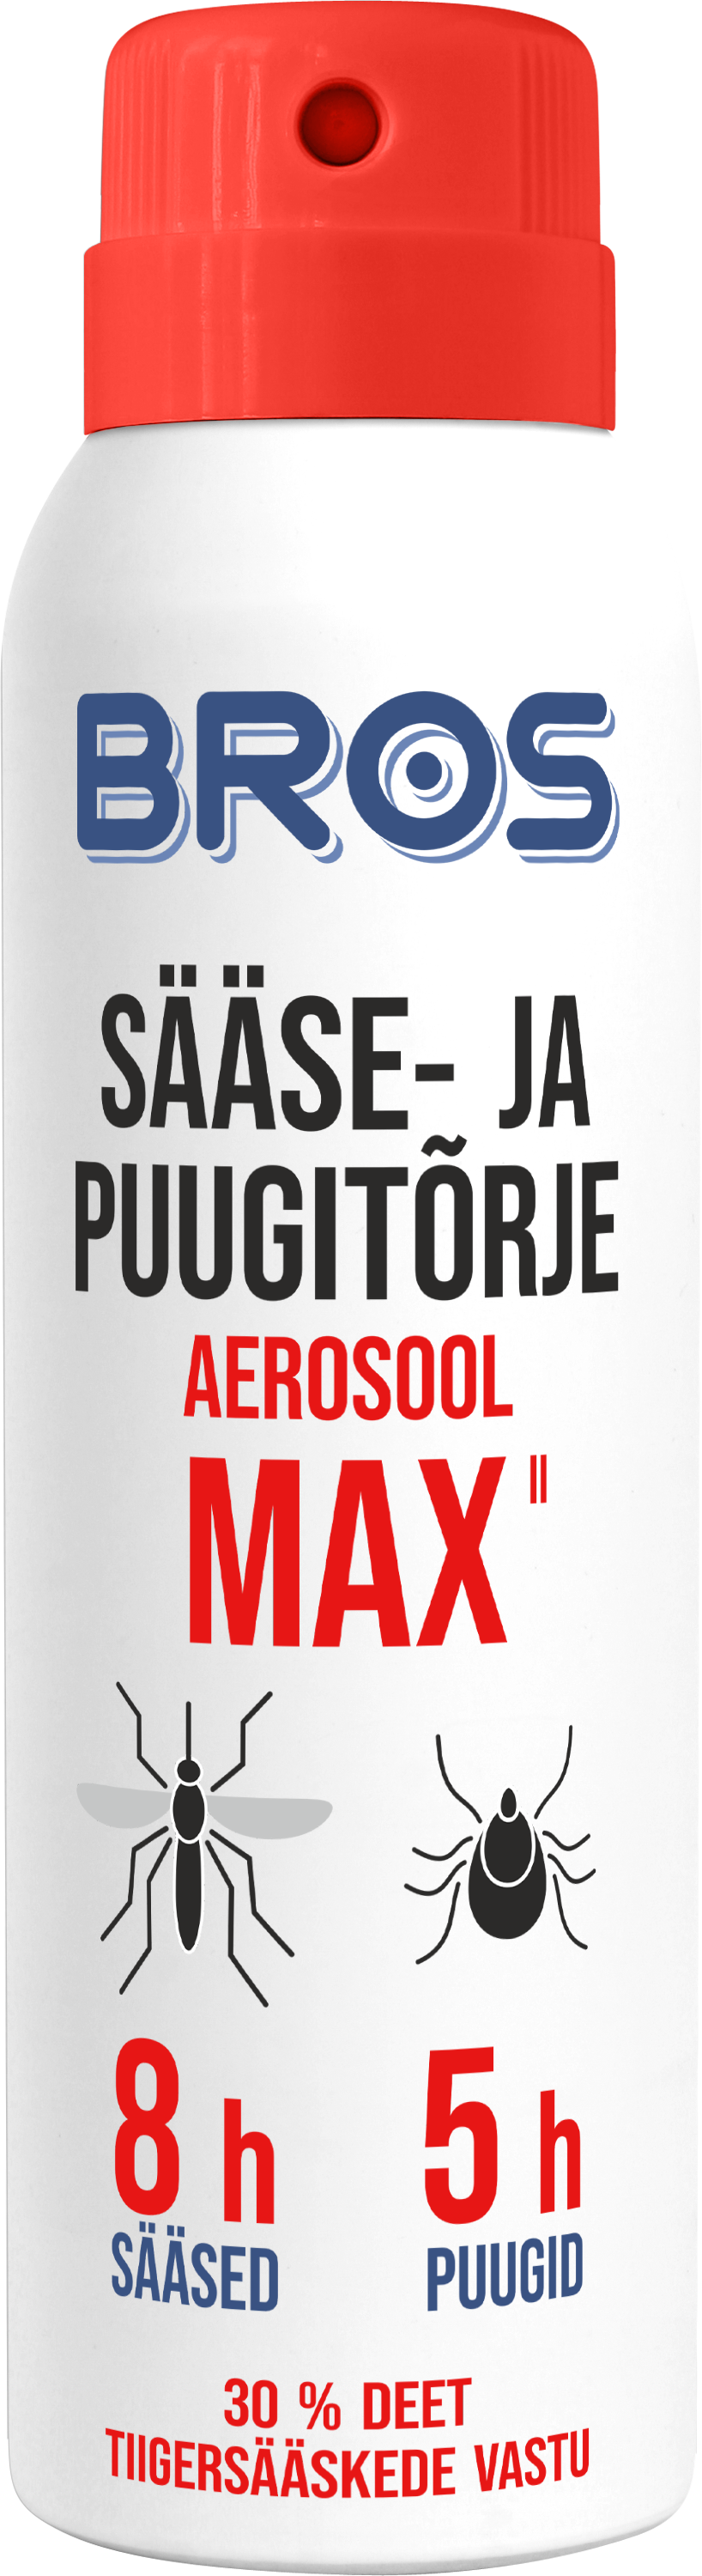 Aerosool sääse- ja puugitõrje MAX 90ml BROS